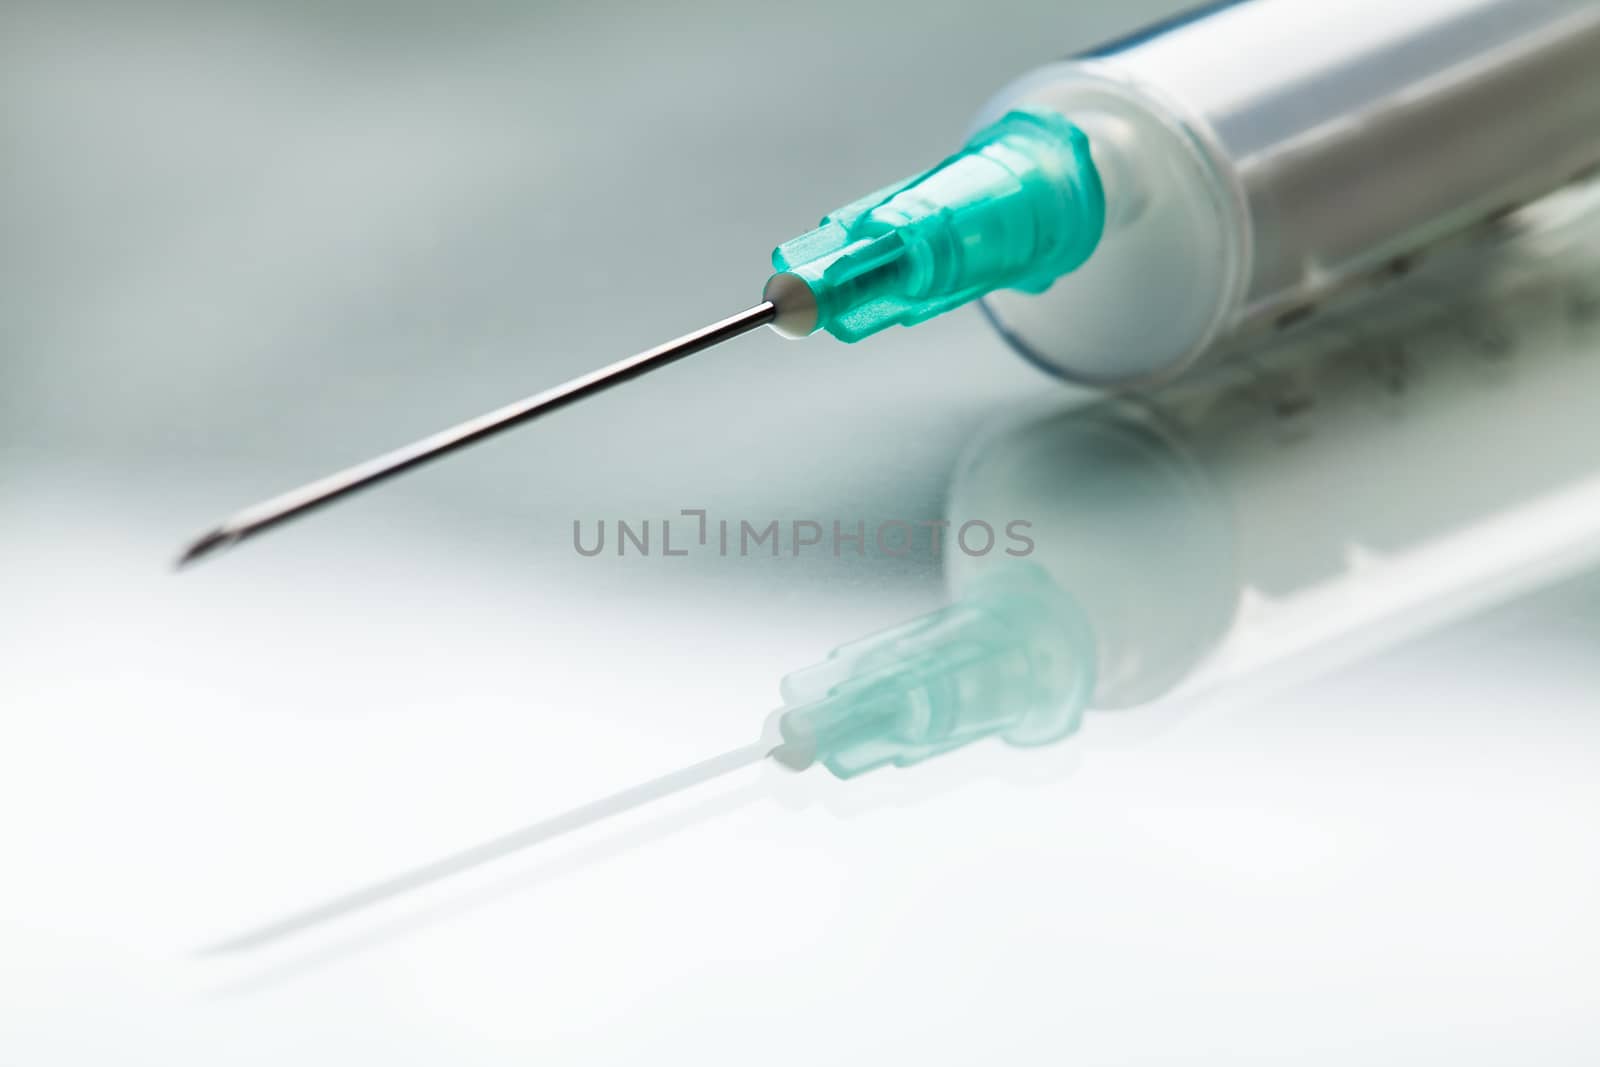 Injection shot, needle & syringe jab on reflective surface by Plyushkin